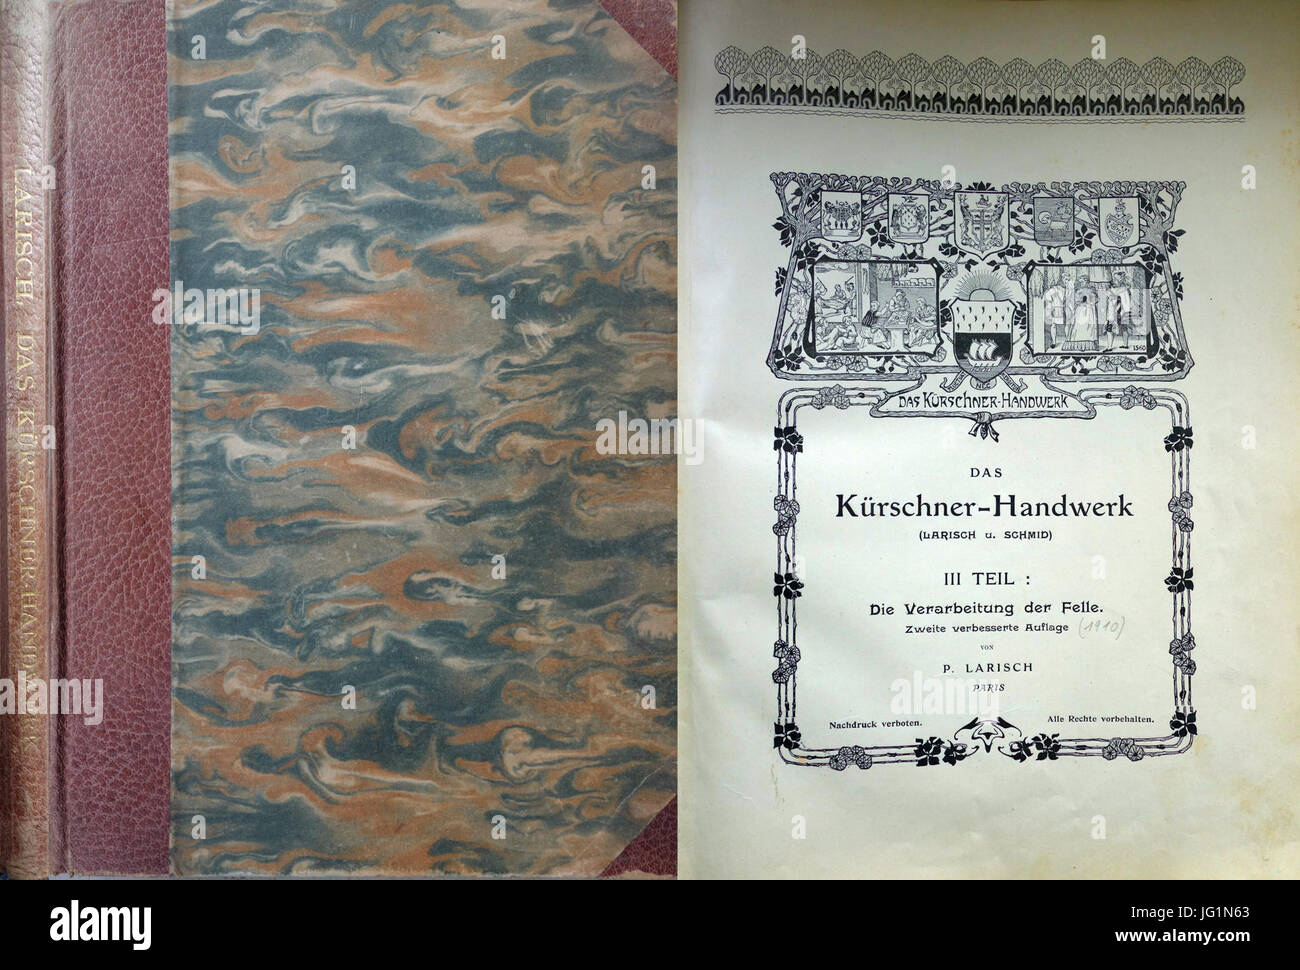 Das Kürschner-Handwerk 2. Auflage 3. Teil, Paul Larisch und Joseph Schmidt, Paris 1910 Stock Photo